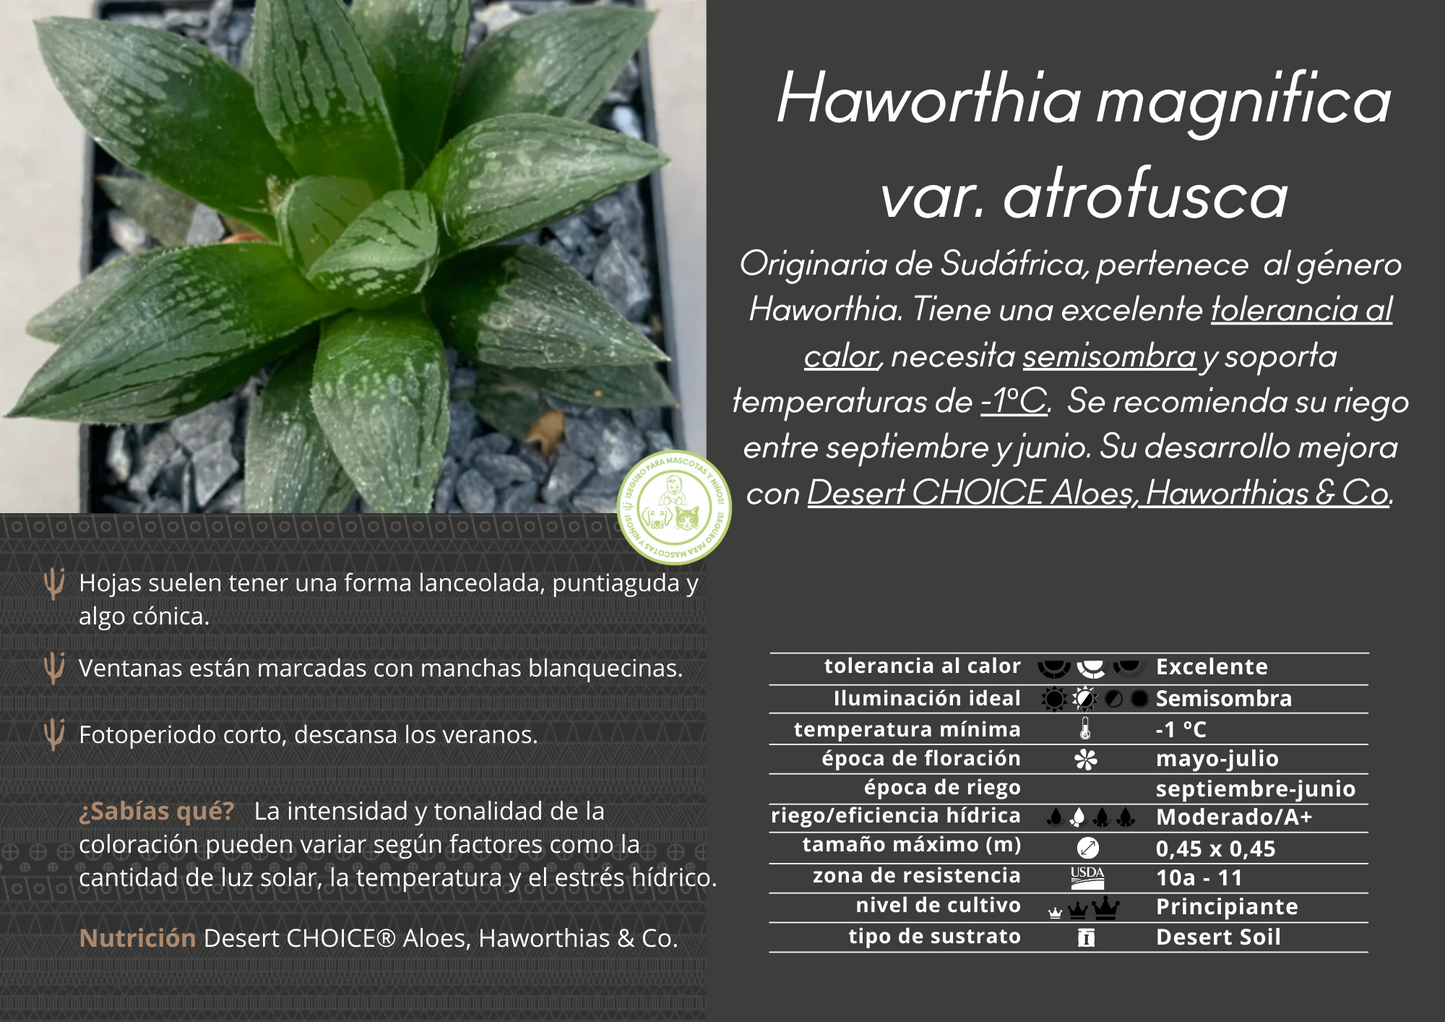 Haworthia magnifica var. atrofusca